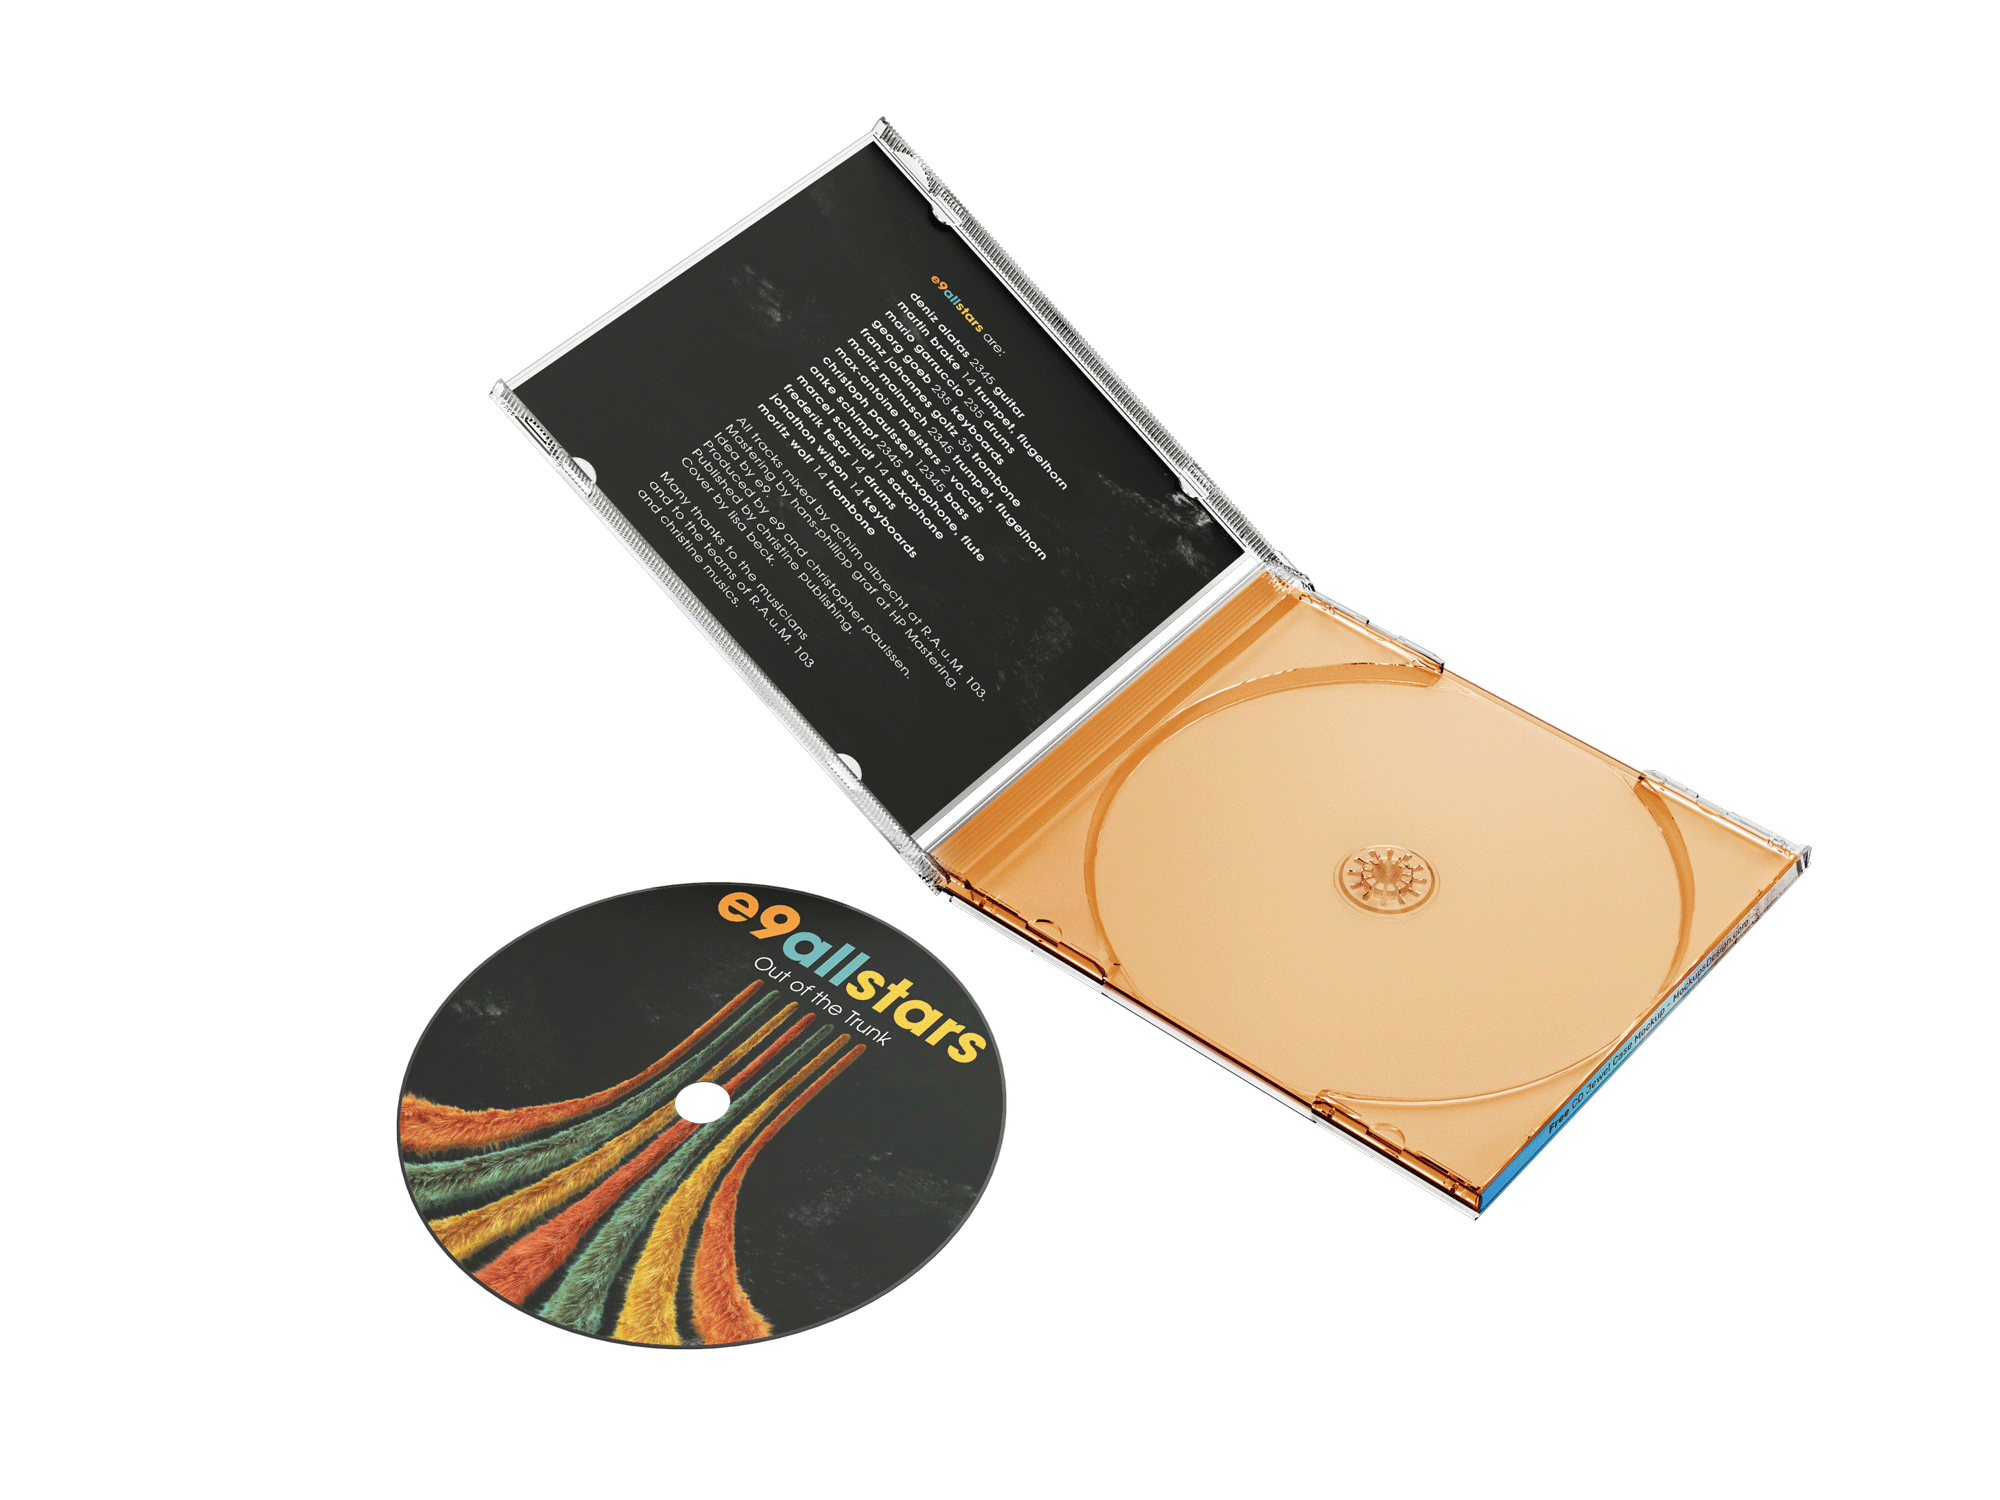 Picture of CD - Kopiering och utskrift + juvelfodral med 4-sidhäfte och inlay